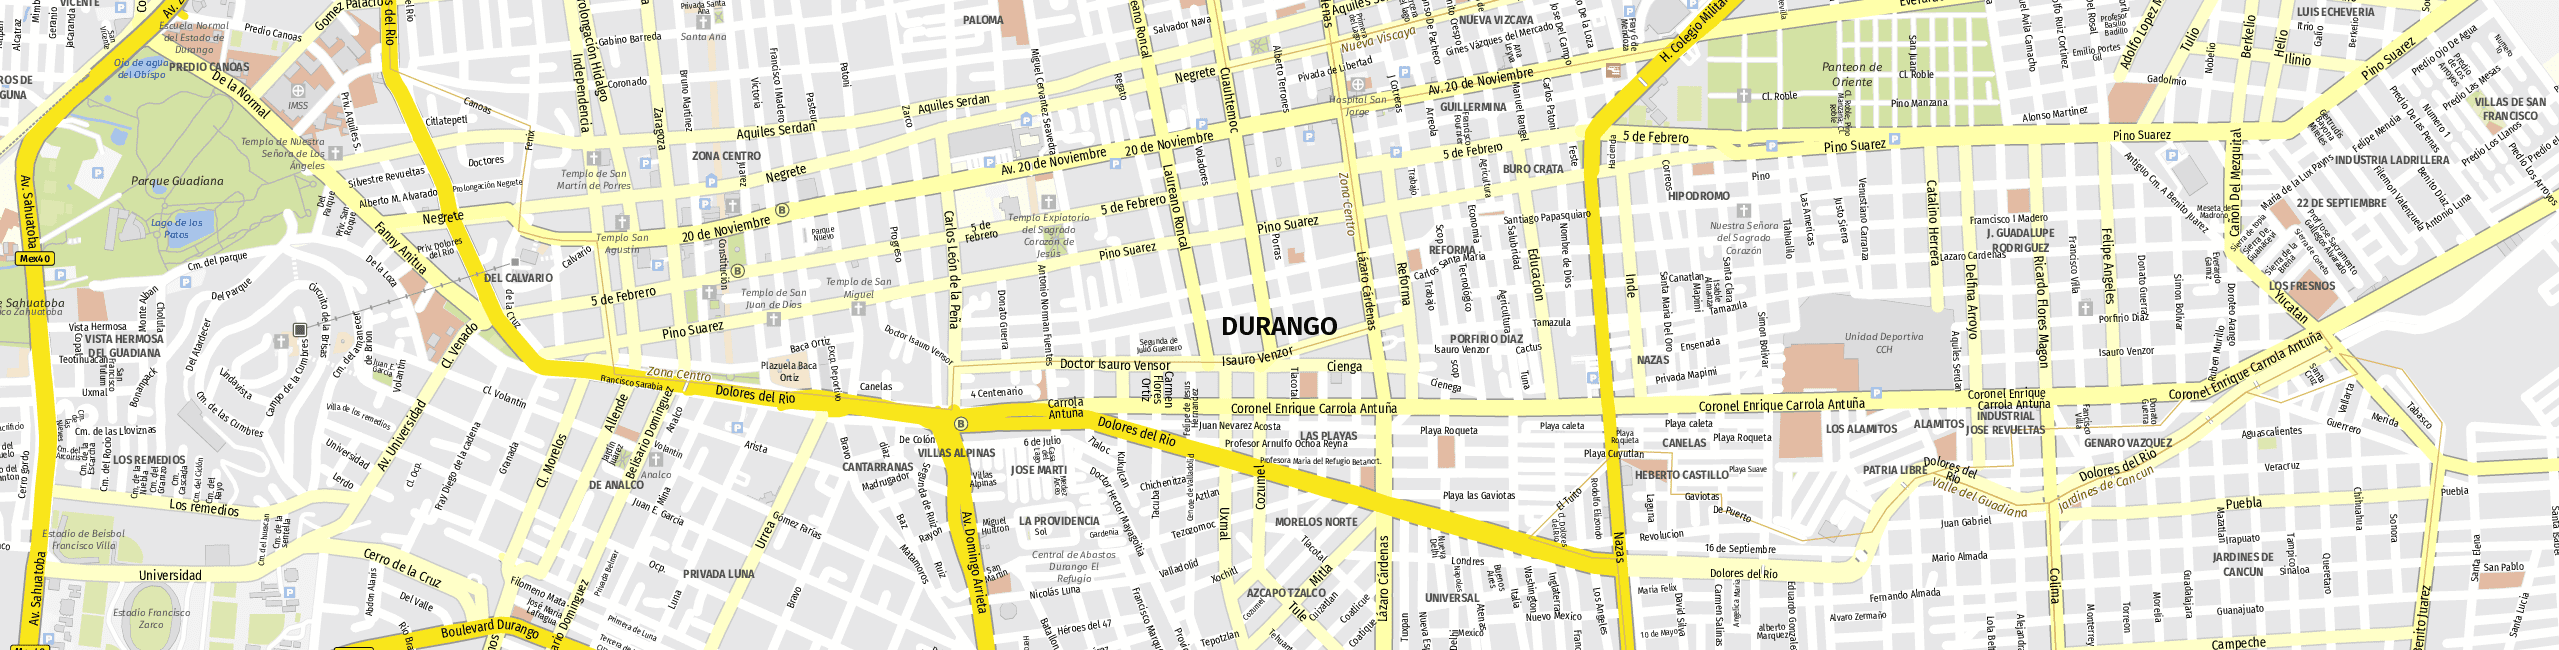 Stadtplan Victoria de Durango zum Downloaden.